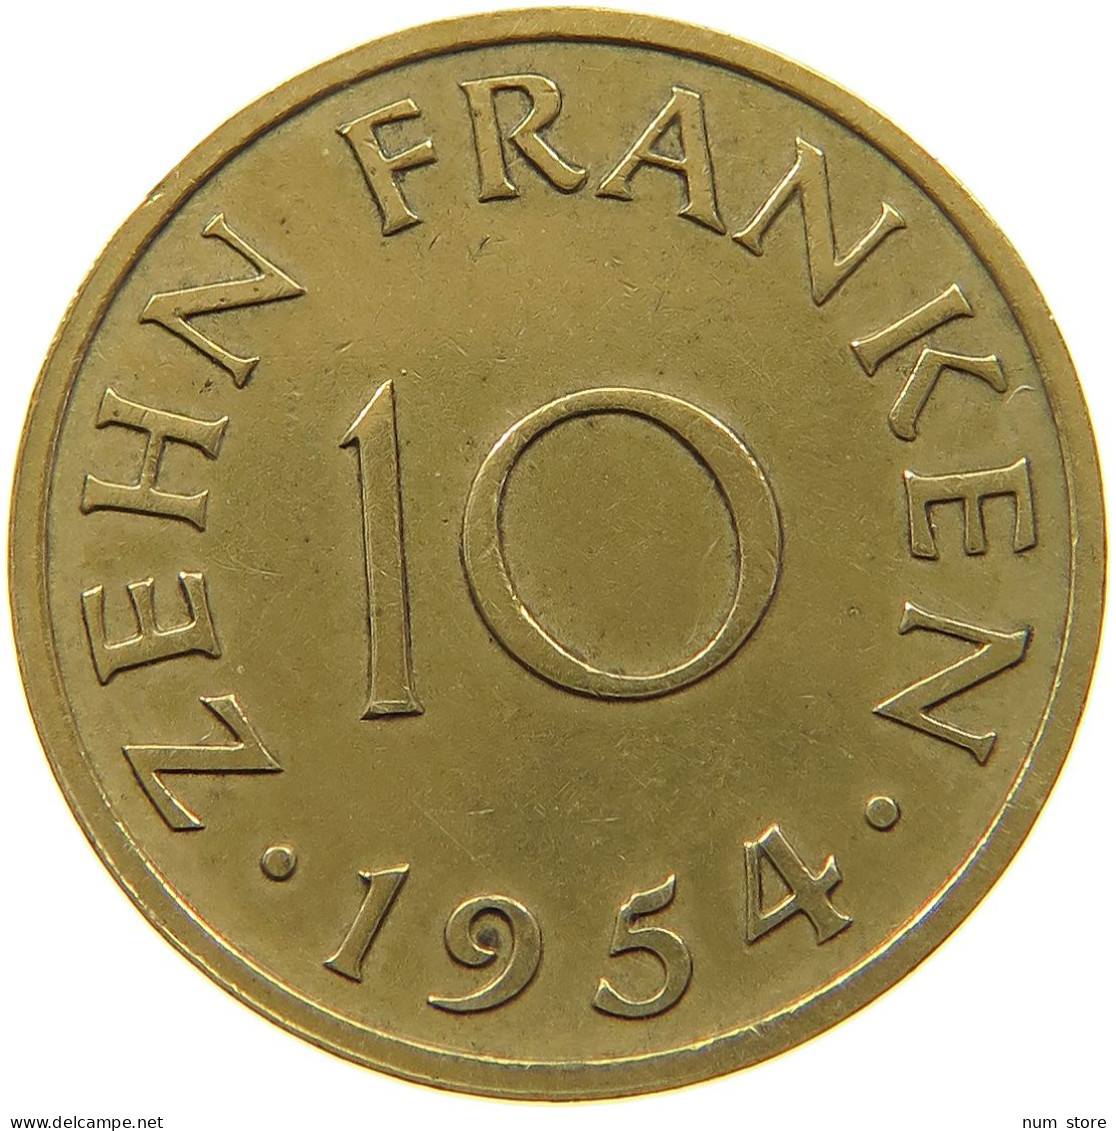 GERMANY WEST 10 FRANKEN 1954 SAARLAND #a047 0509 - 10 Francos